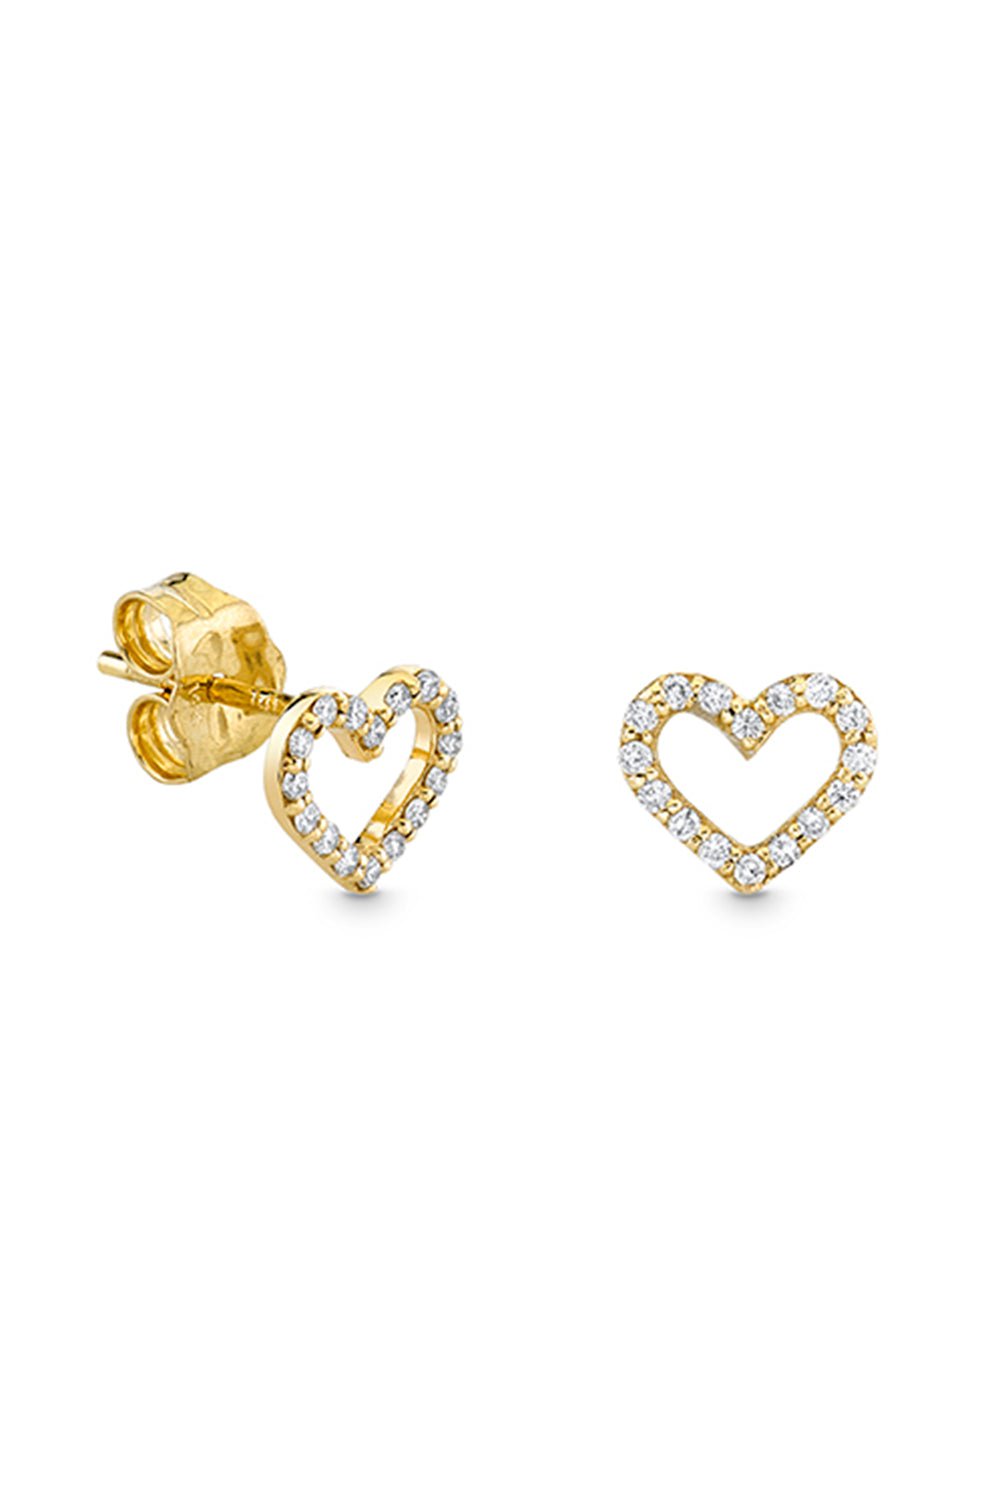 SYDNEY EVAN-Small Open Heart Earrings-YELLOW GOLD